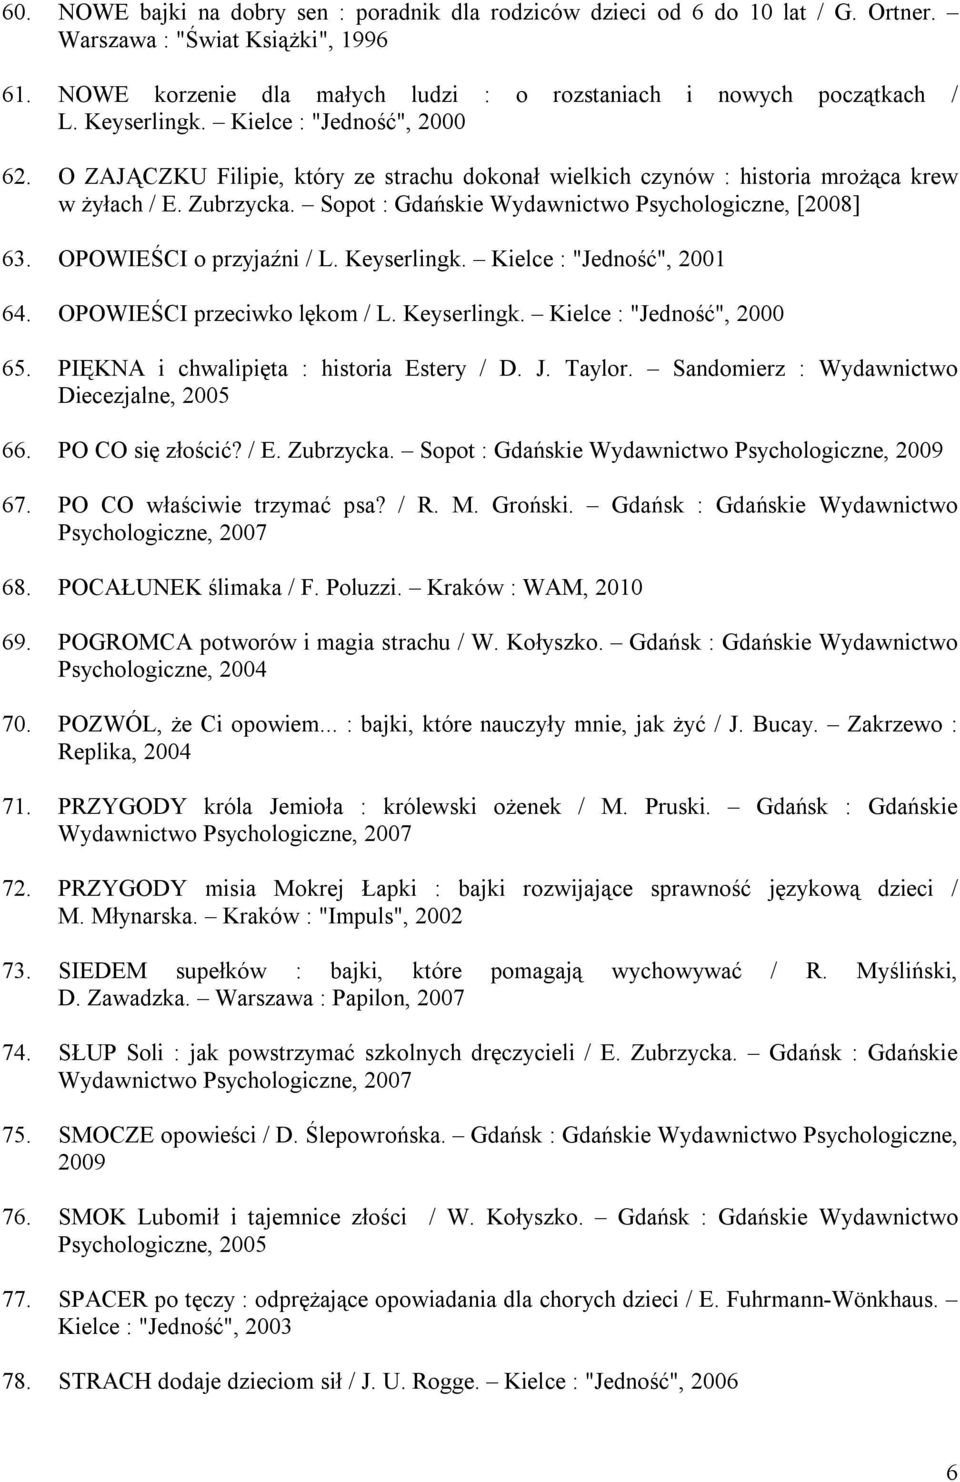 Sopot : Gdańskie Wydawnictwo Psychologiczne, [2008] 63. OPOWIEŚCI o przyjaźni / L. Keyserlingk. Kielce : "Jedność", 2001 64. OPOWIEŚCI przeciwko lękom / L. Keyserlingk. Kielce : "Jedność", 2000 65.